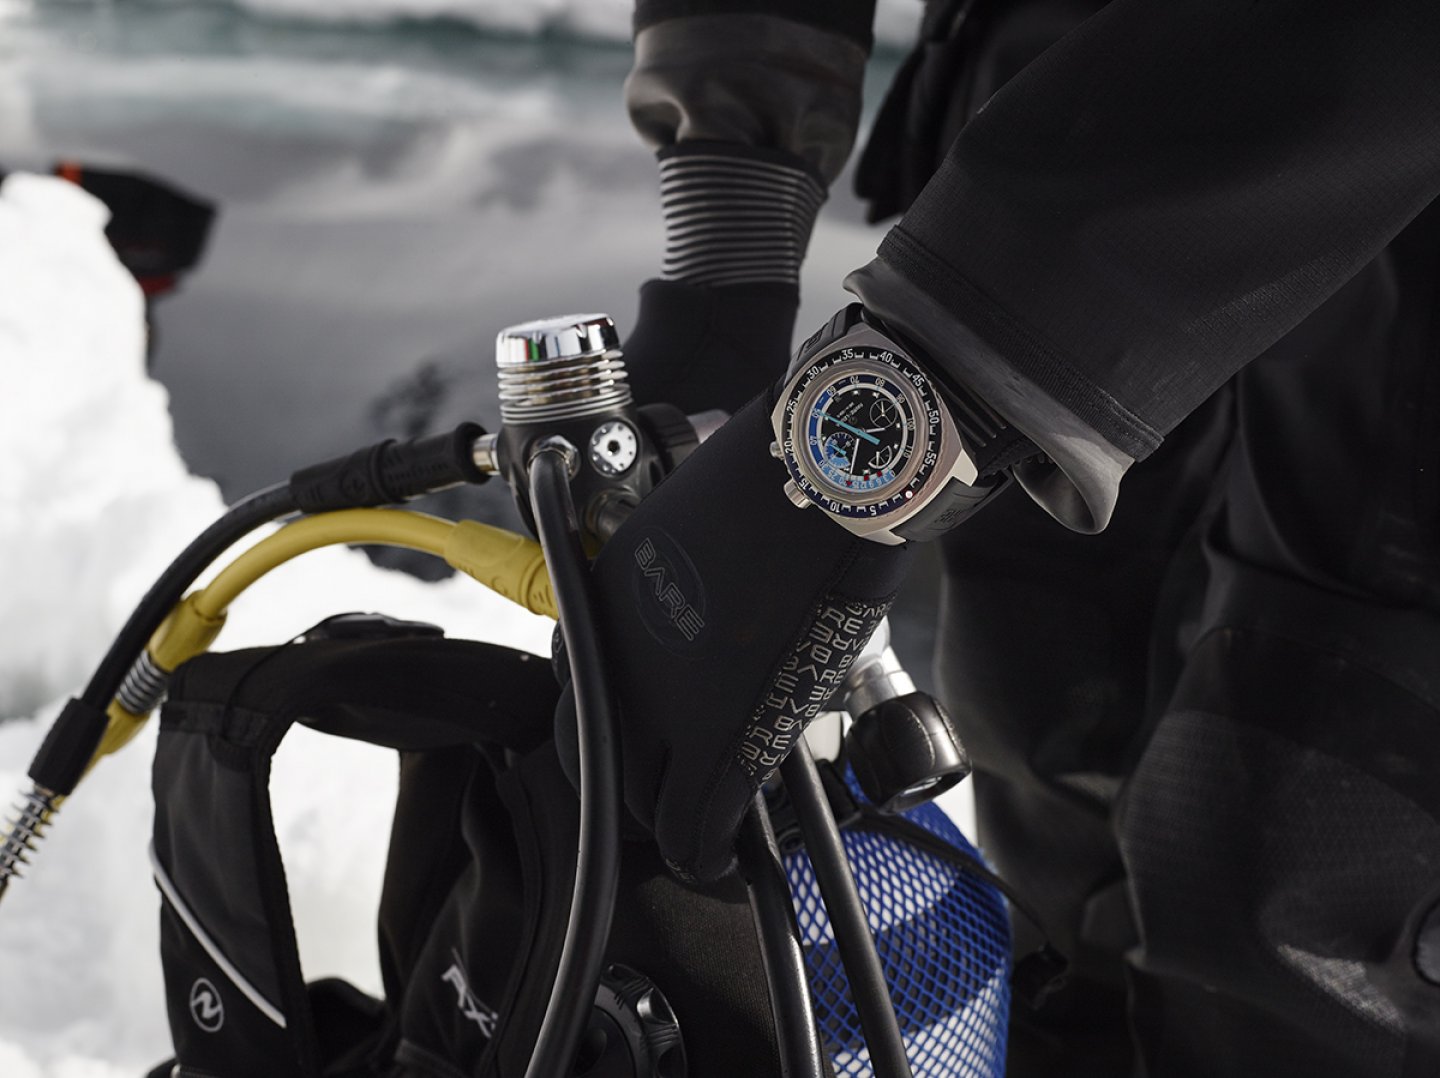 ファーブル・ルーバ「レイダー・バシィ120メモデプス」、水深120mまで測定できる世界初の機械式腕時計、タカシマヤウオッチメゾン 東京・日本橋にて日本初展示